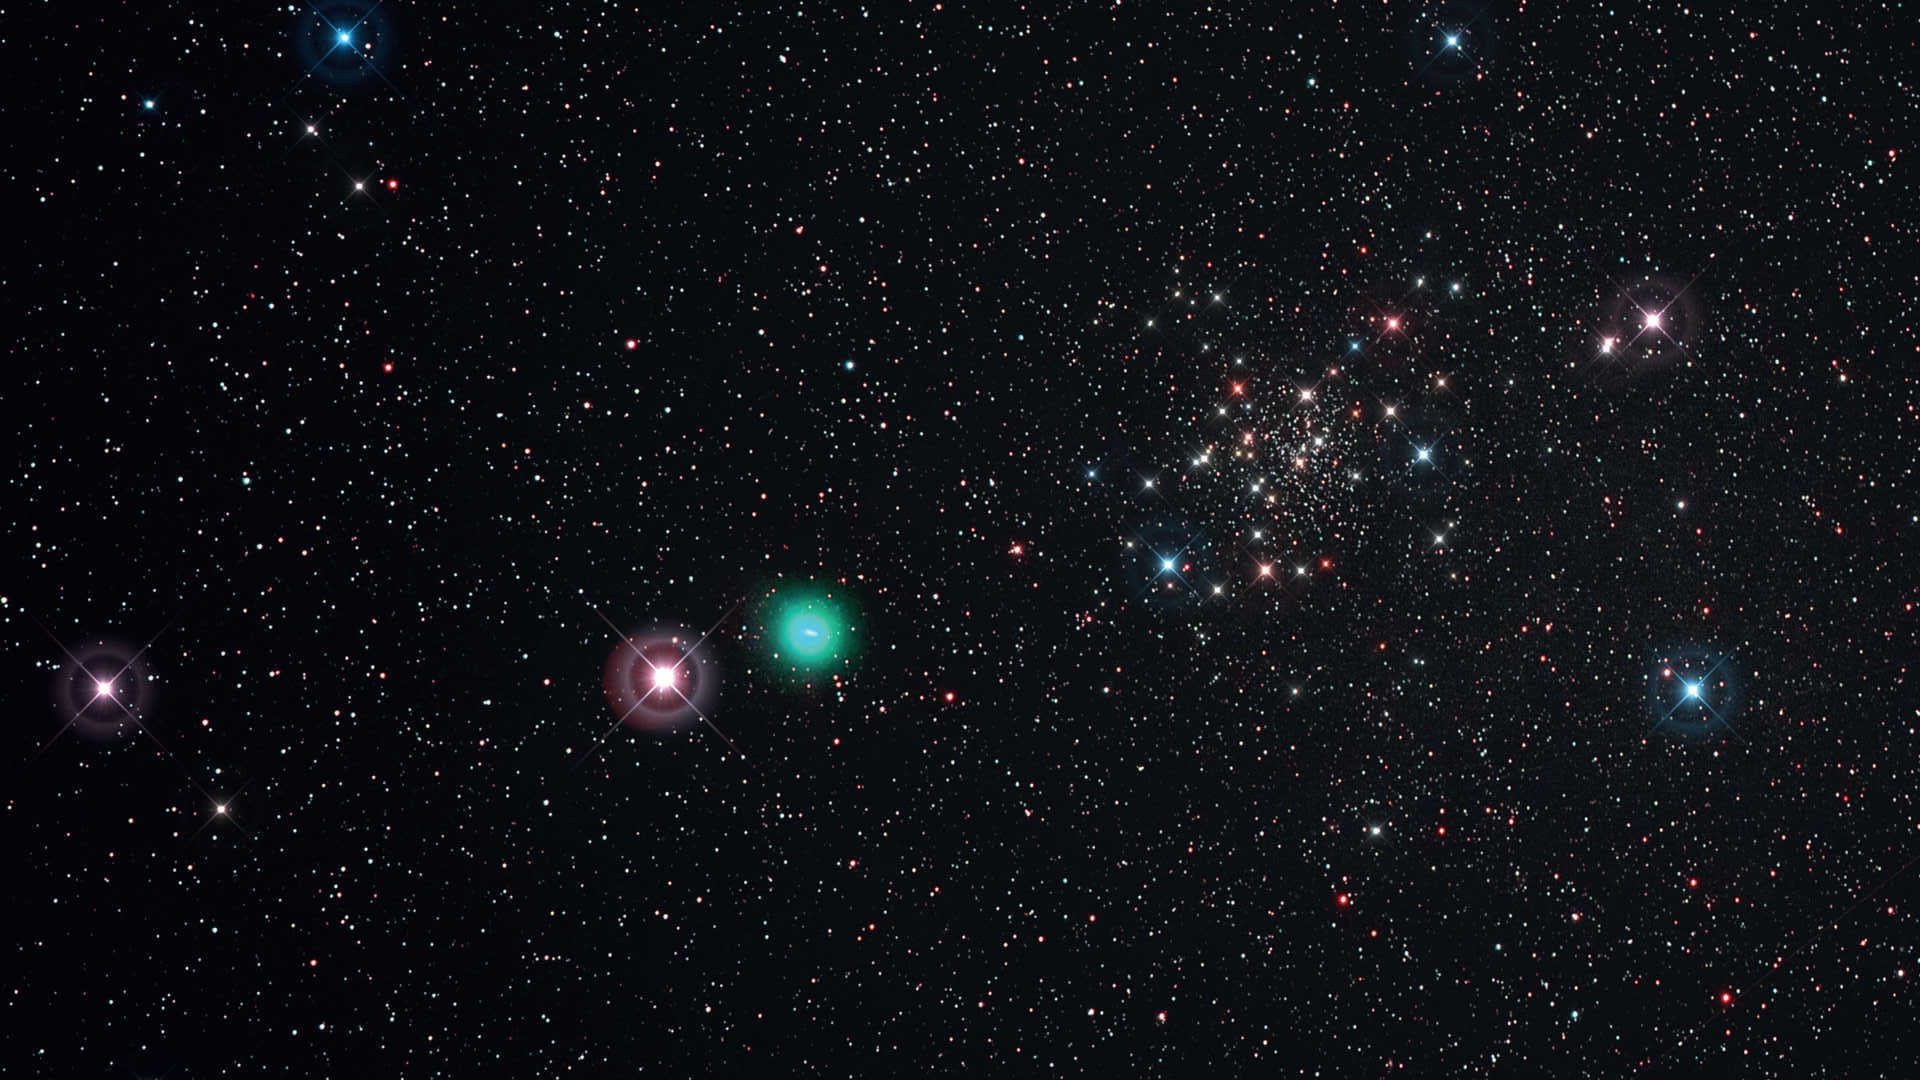 Die klare Nacht am 21.5.2015 ermöglichte
die Fotografie des Kometen C/2014
Q2 (Lovejoy) bei der Passage am Rande des
Sternhaufens NGC188. Bei dieser Aufnahme
wurde eine Kowa Telephoto Lens/Scope (Brennweite:
350mm, F/4) an einer Canon 6D (Hα-modifiziert)
mit UHC-S-Filter verwendet. Summenbild
aus sechs Aufnahmen mit einer Belichtungszeit
von je 450 Sekunden (ISO 800; Gesamtbelichtungszeit:
45 Minuten). Bearbeitet mit DeepSkyStacker und Photoshop; Spikes nur aus ästhetischen
Gründen ergänzt. U. Dittler